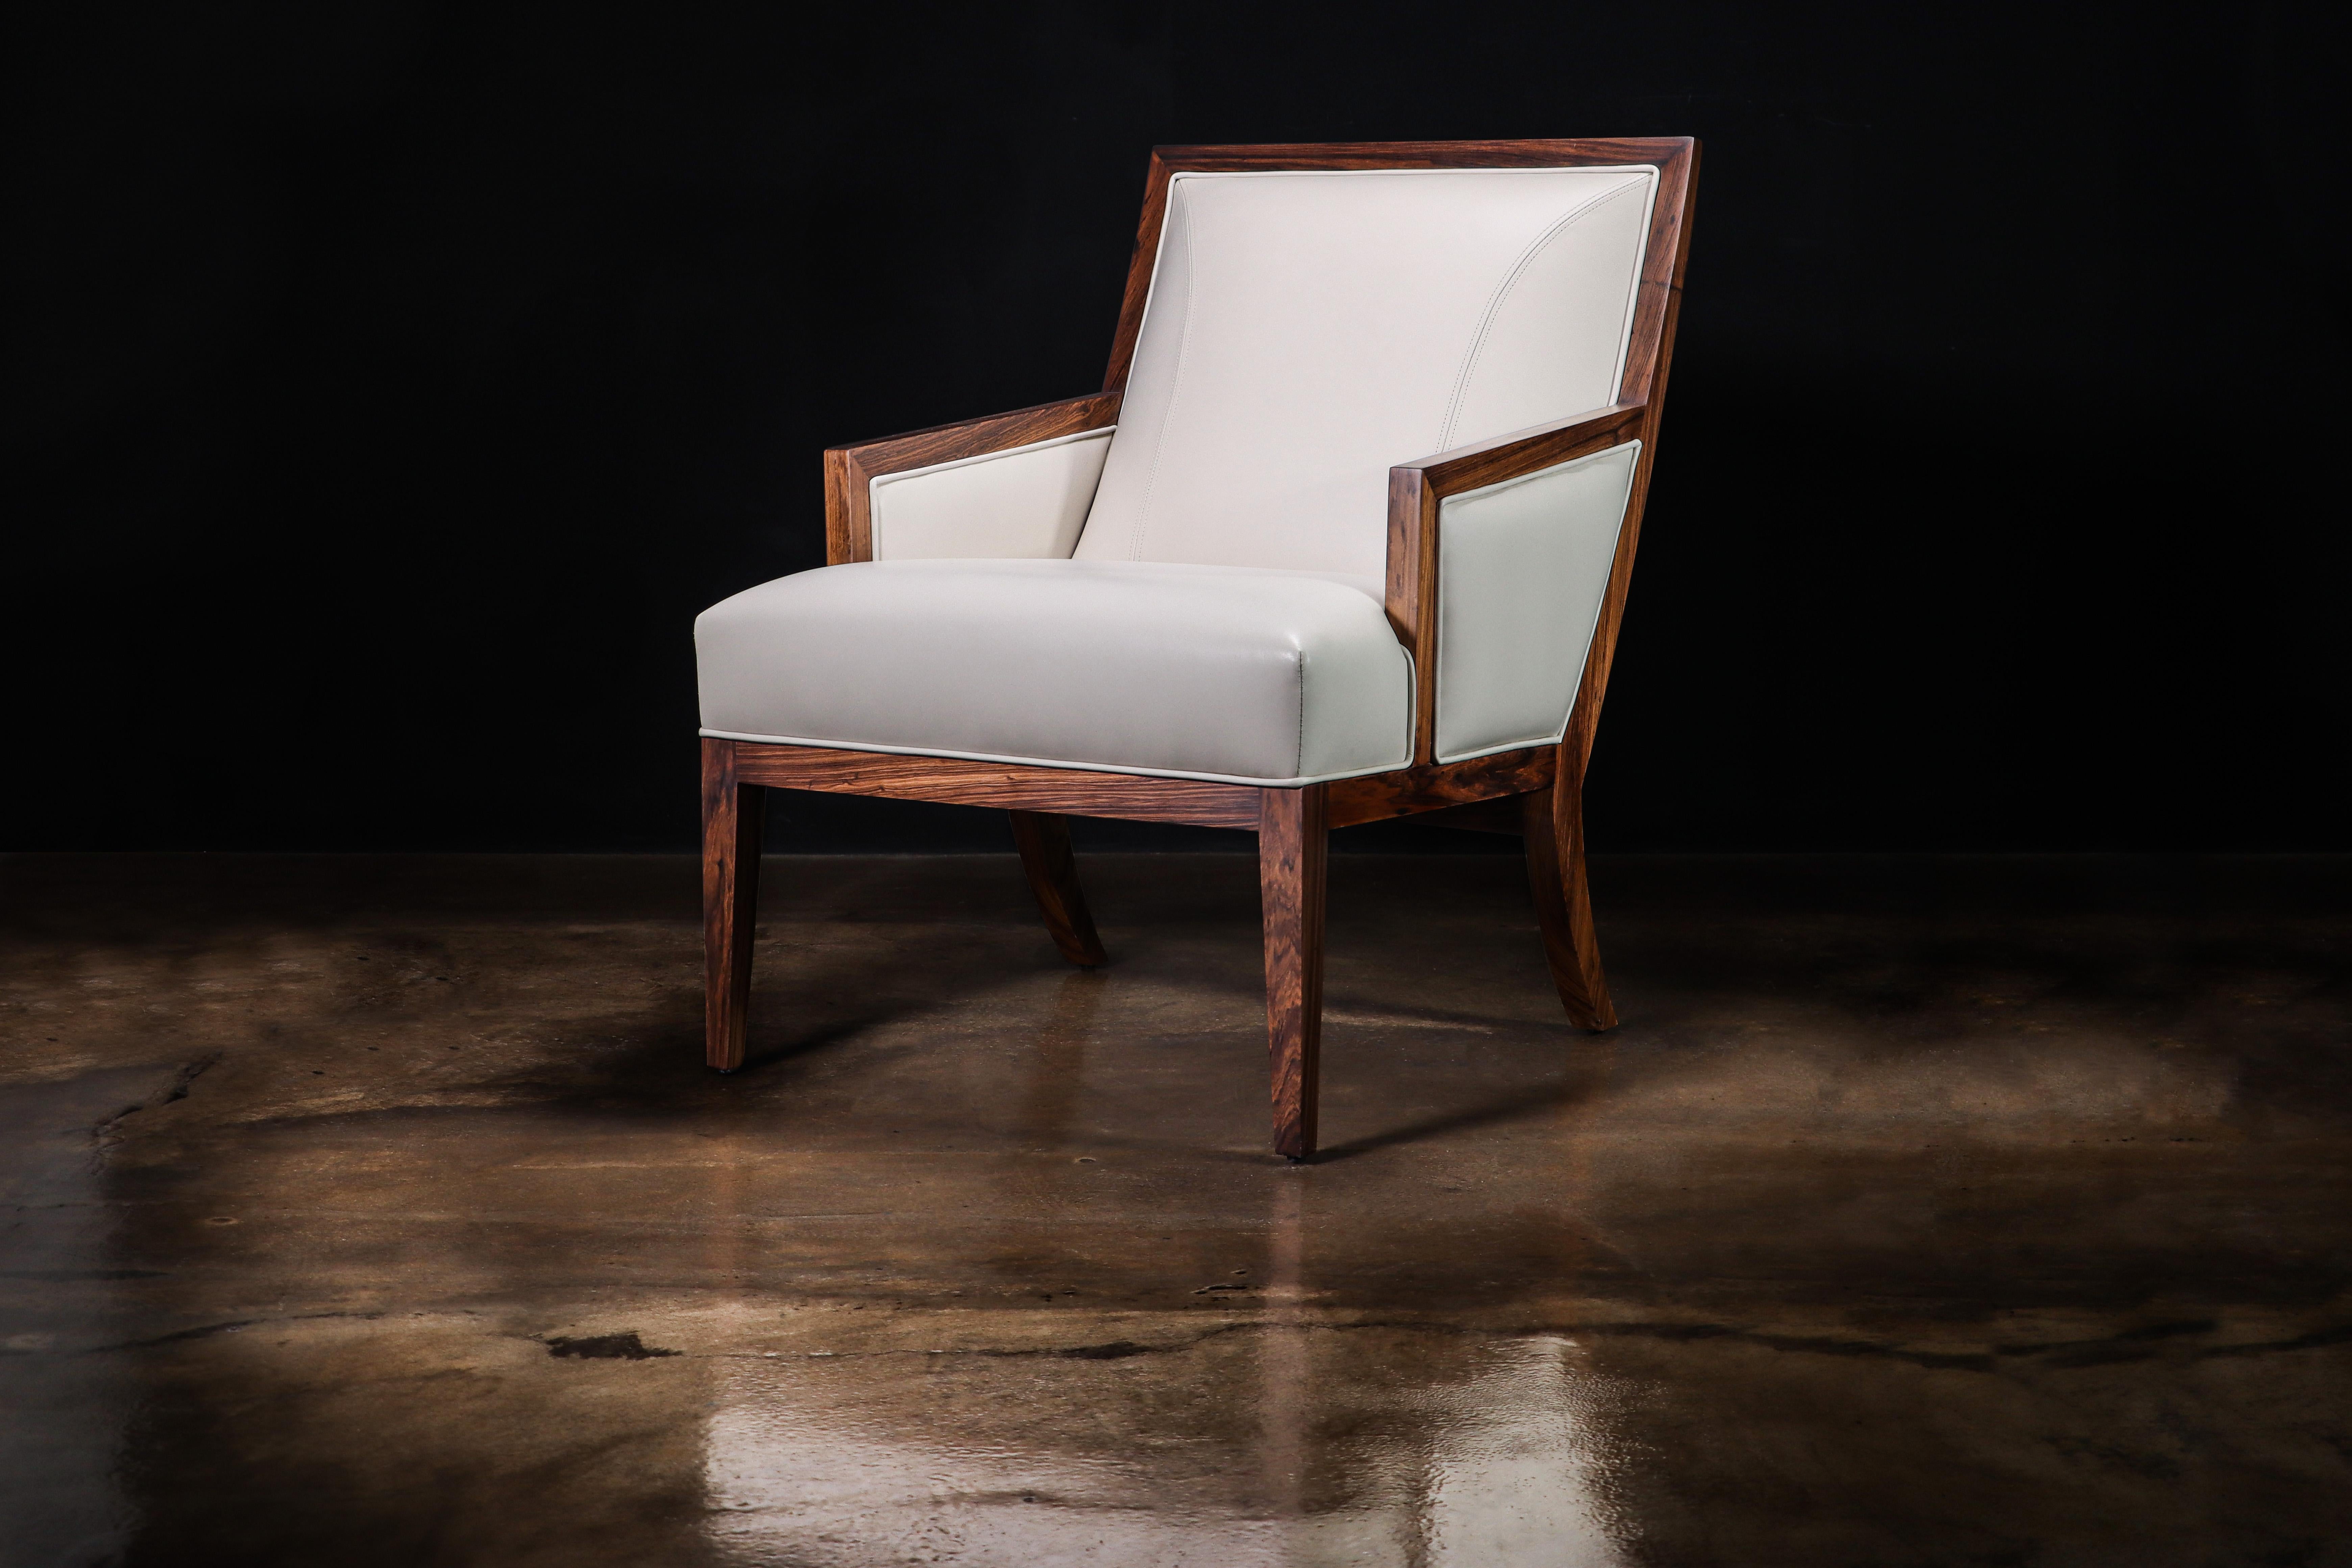 Chaise longue contemporaine Belgrano en bois et cuir blanc de Costantini

Les dimensions sont les suivantes : 27